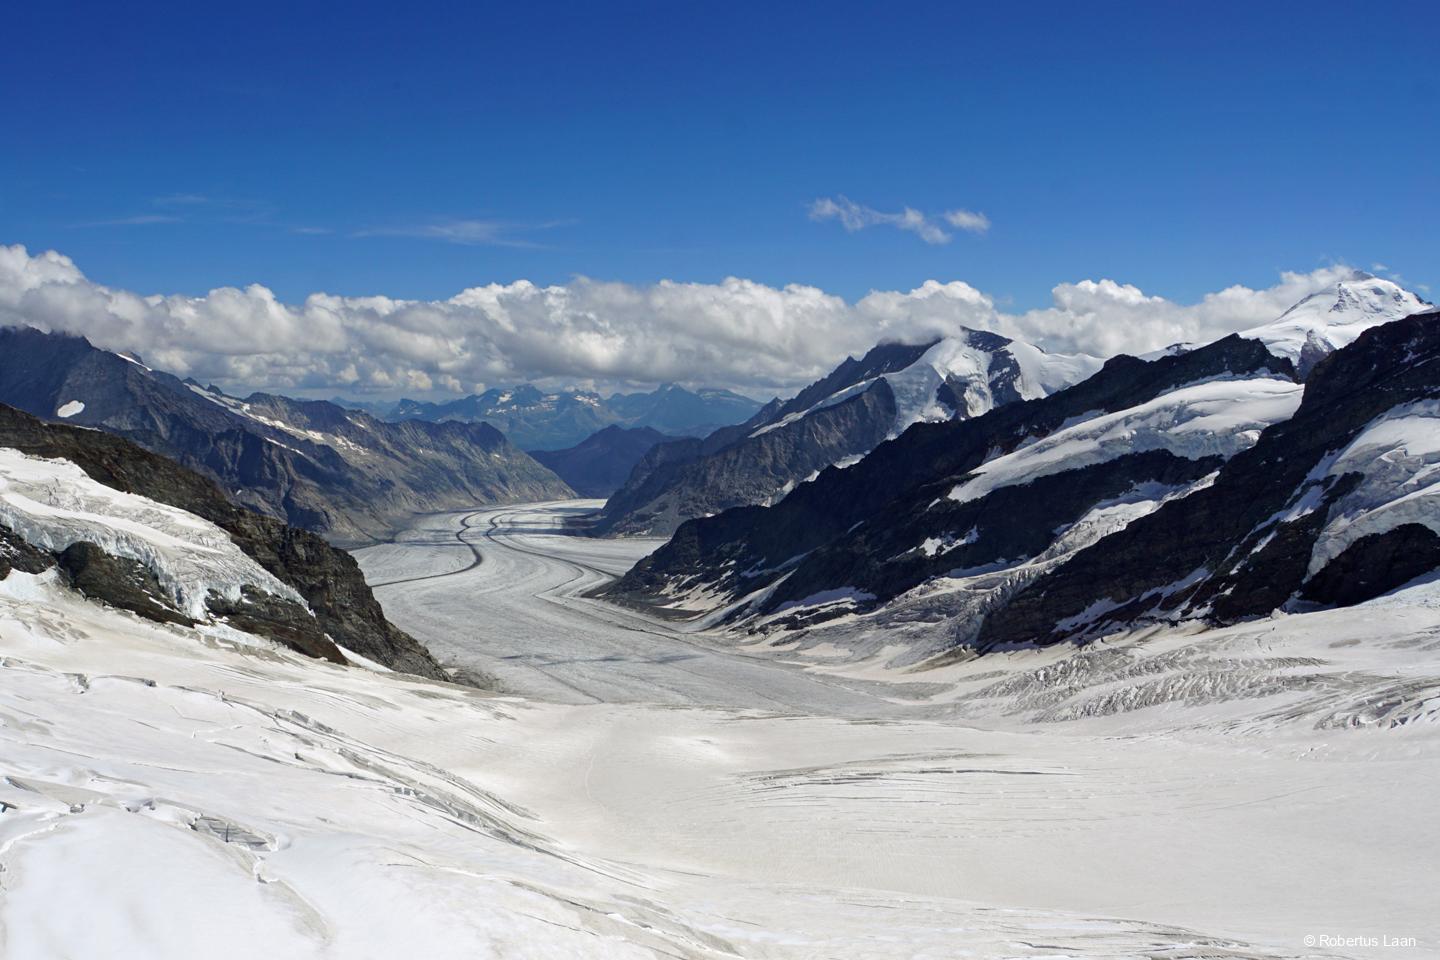 Jungfraujoch-Top of Europe with Aletsch Glacier